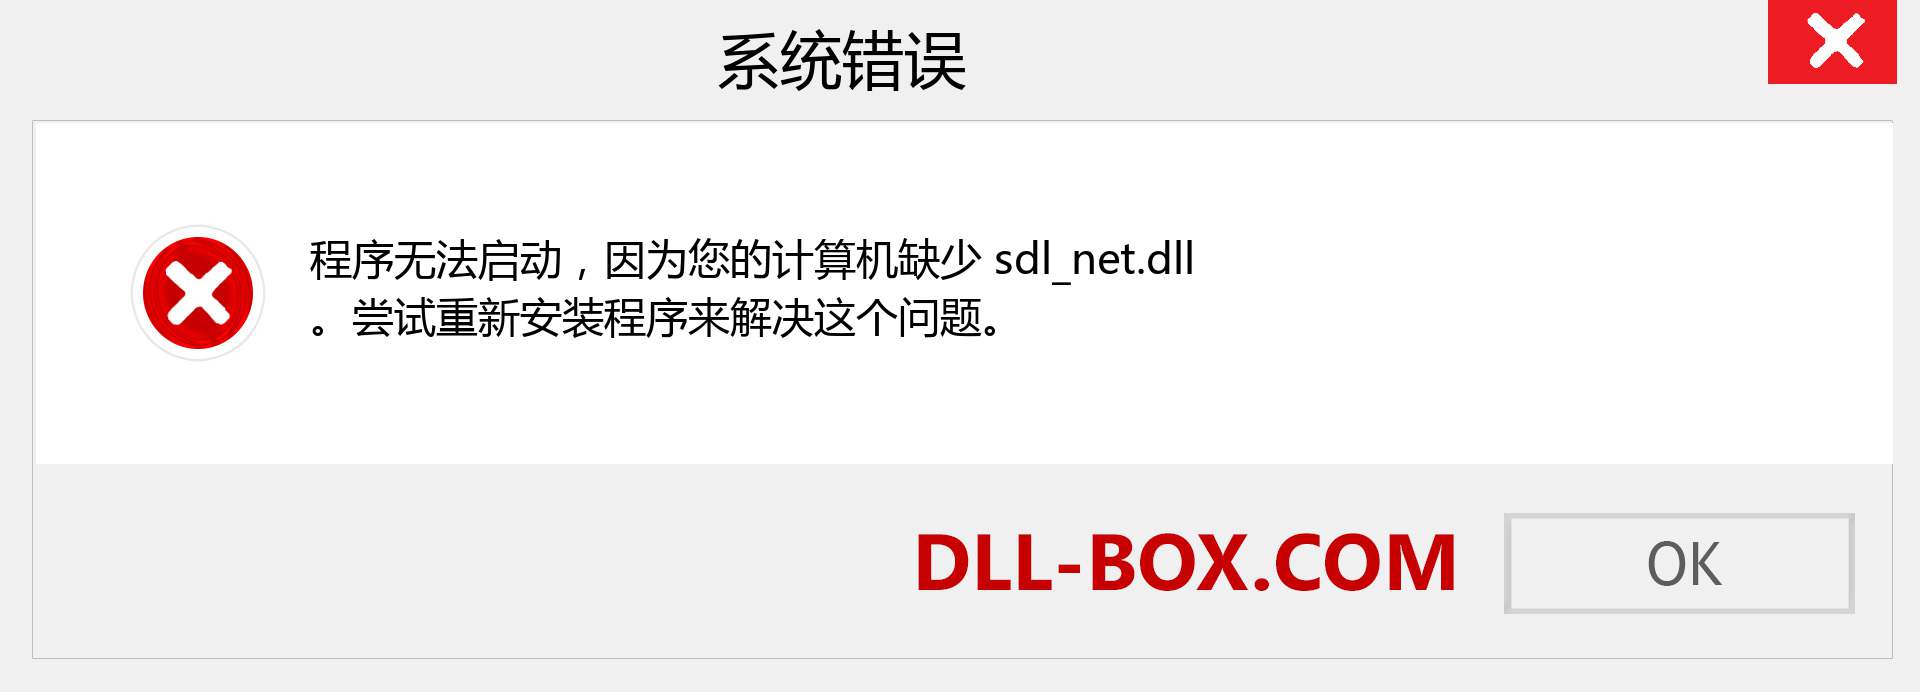 sdl_net.dll 文件丢失？。 适用于 Windows 7、8、10 的下载 - 修复 Windows、照片、图像上的 sdl_net dll 丢失错误